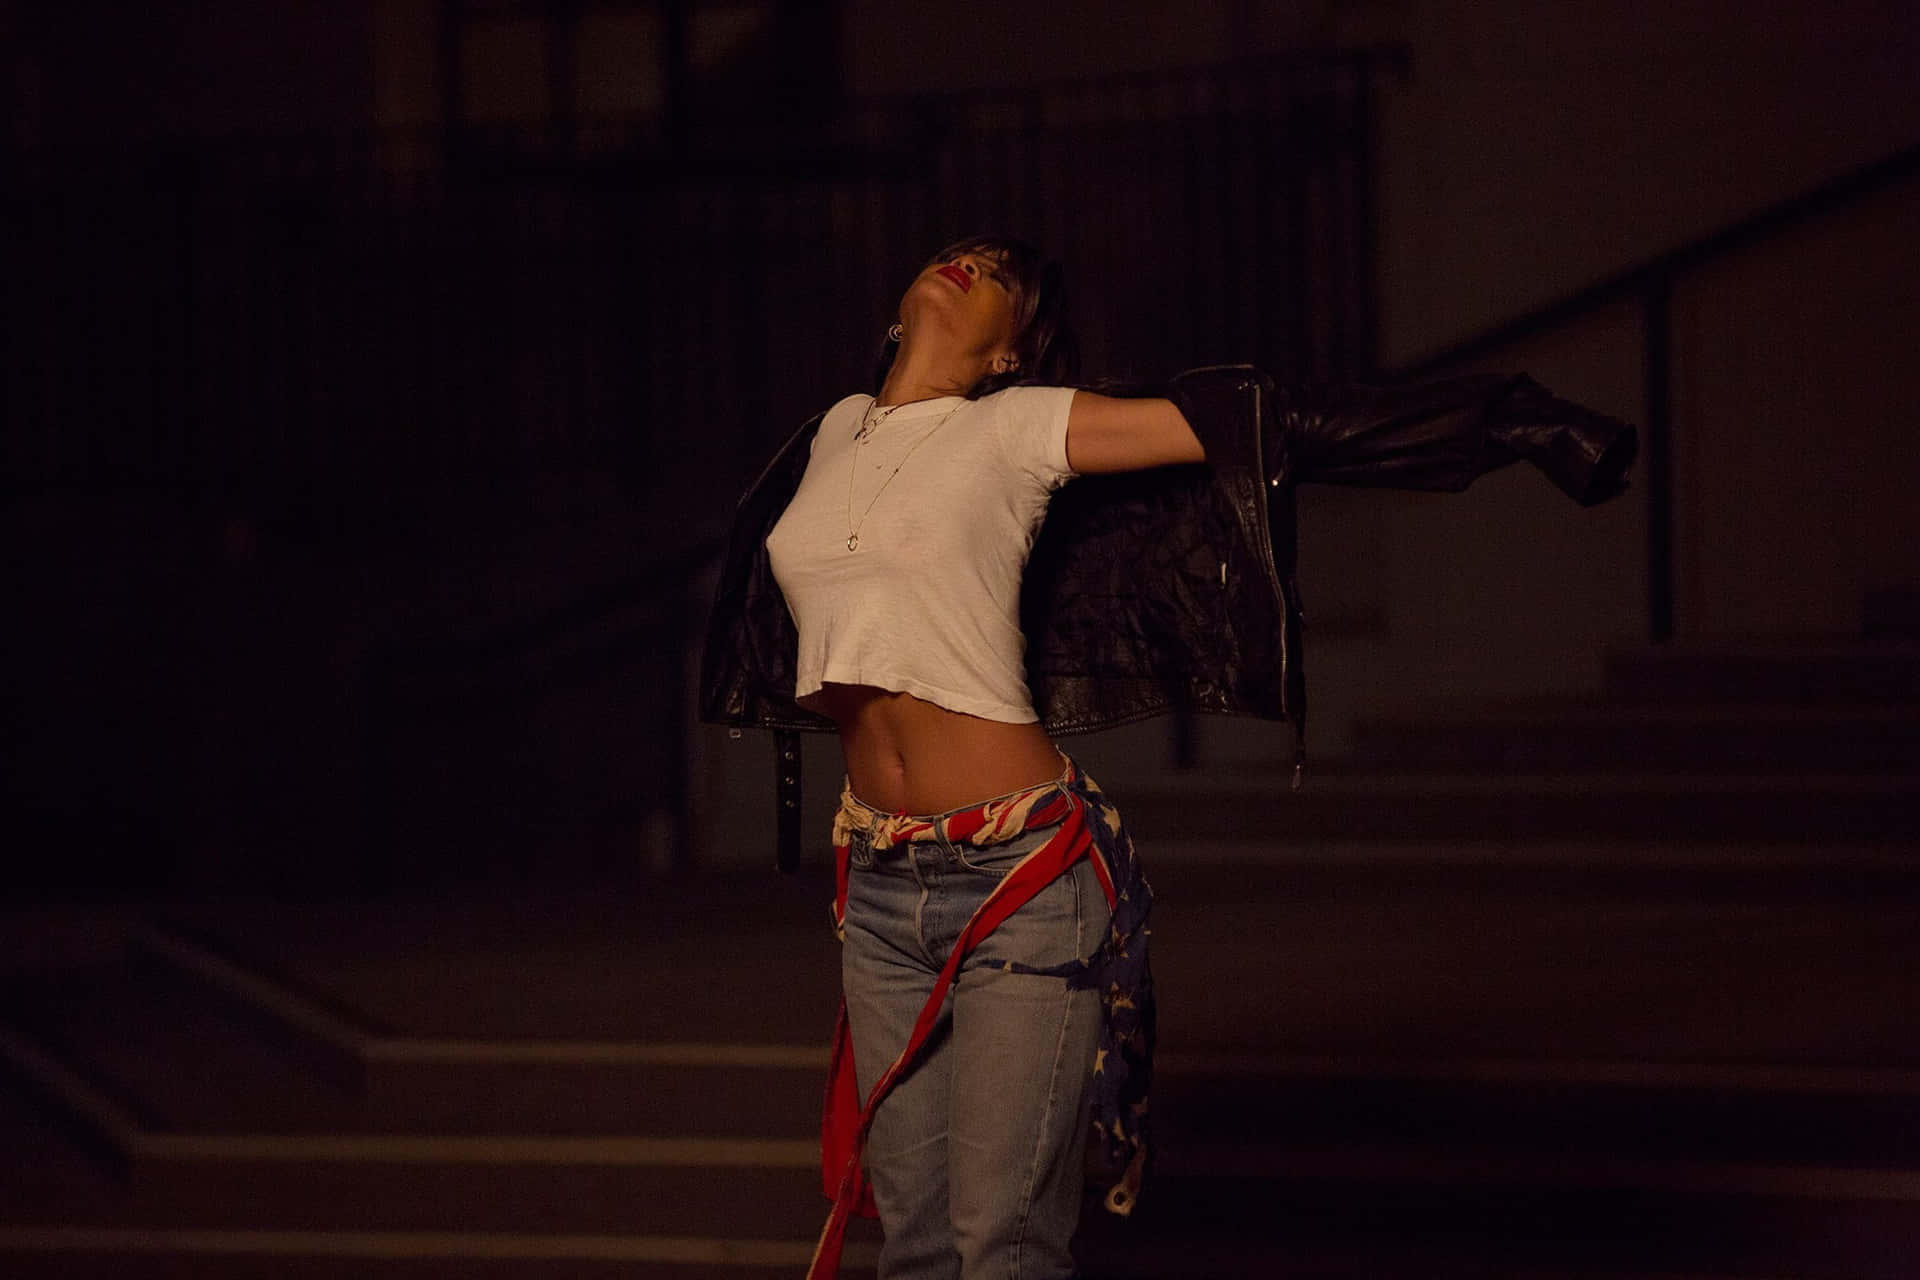 Diegrammy-gewinnerin Rihanna Wurde Für Das Cover Des Fenty Magazins Fotografiert.